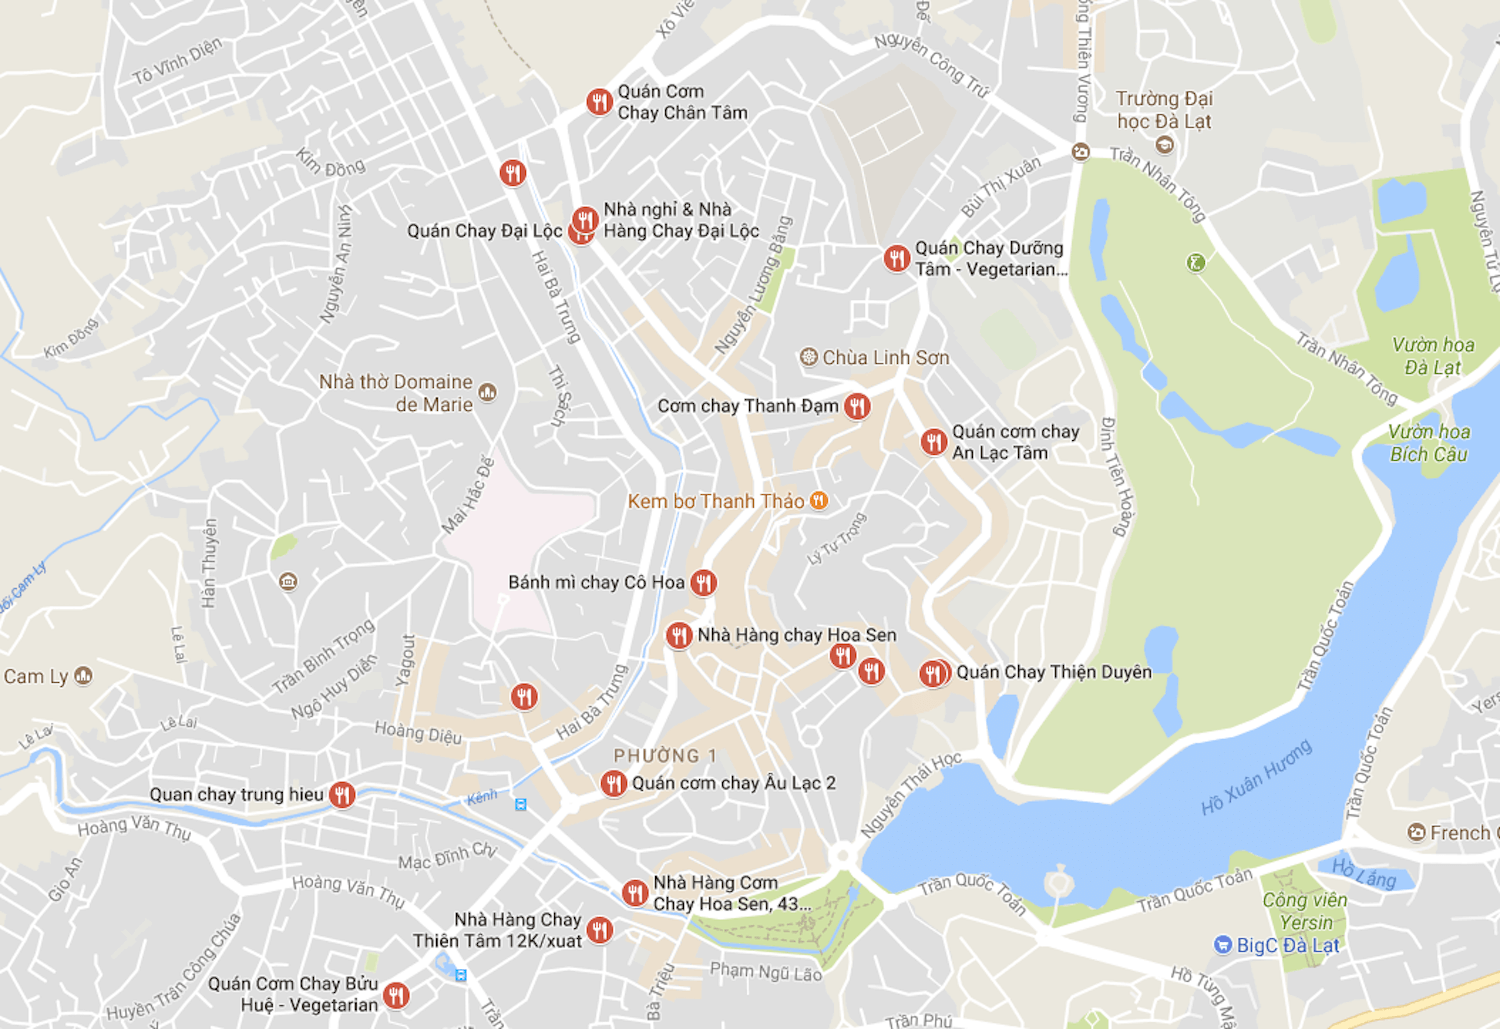 Recherche de restaurants chay à Da Lat sur Google Maps